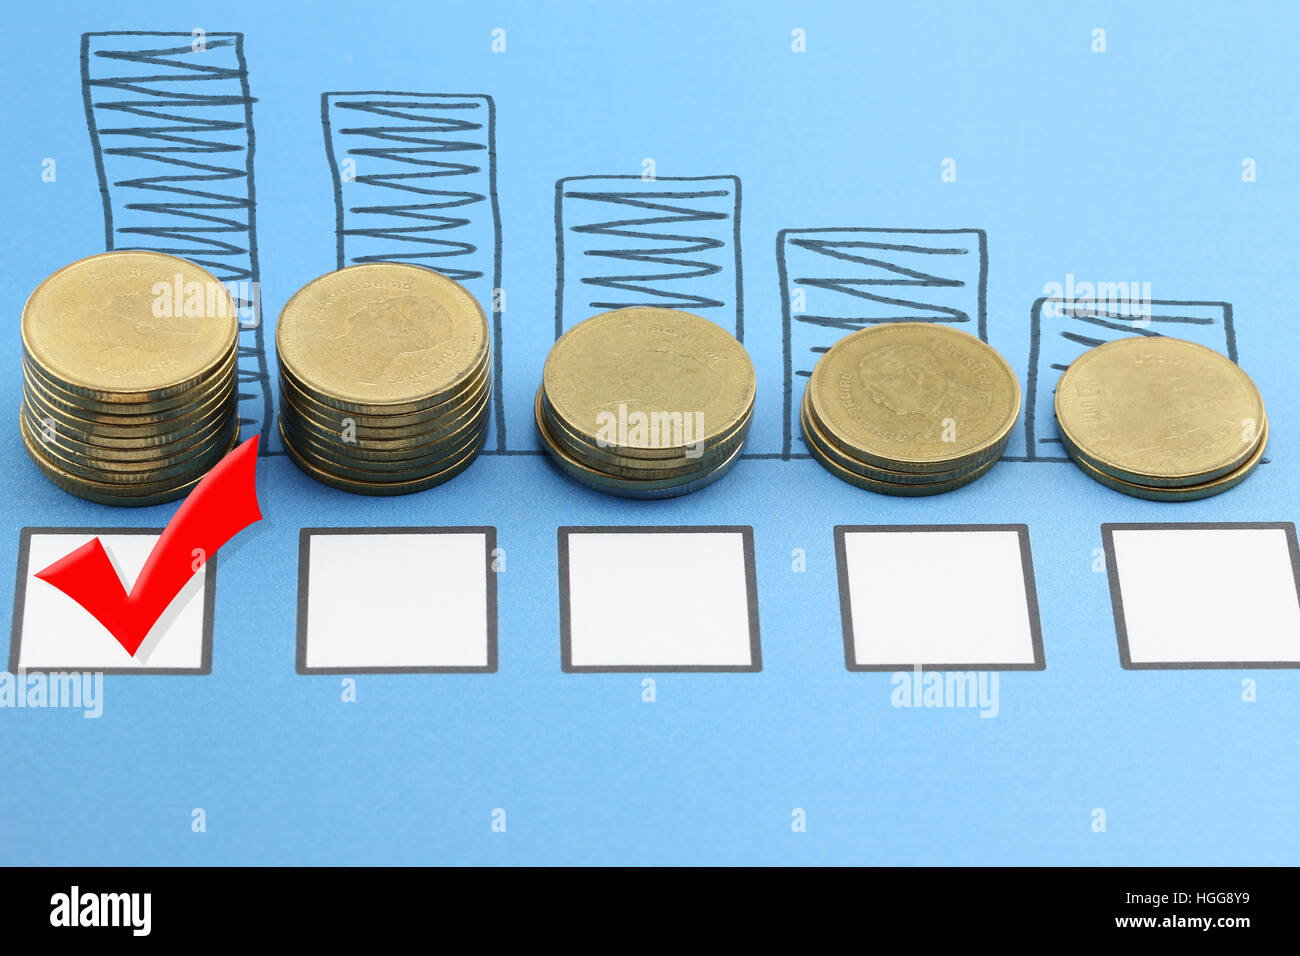 Balkendiagramm der Goldmünzen auf blauem Papier-Dokumente und roten Häkchen auf Checkbox, Konzept der Investition und Rentabilität im Geschäft. Stockfoto